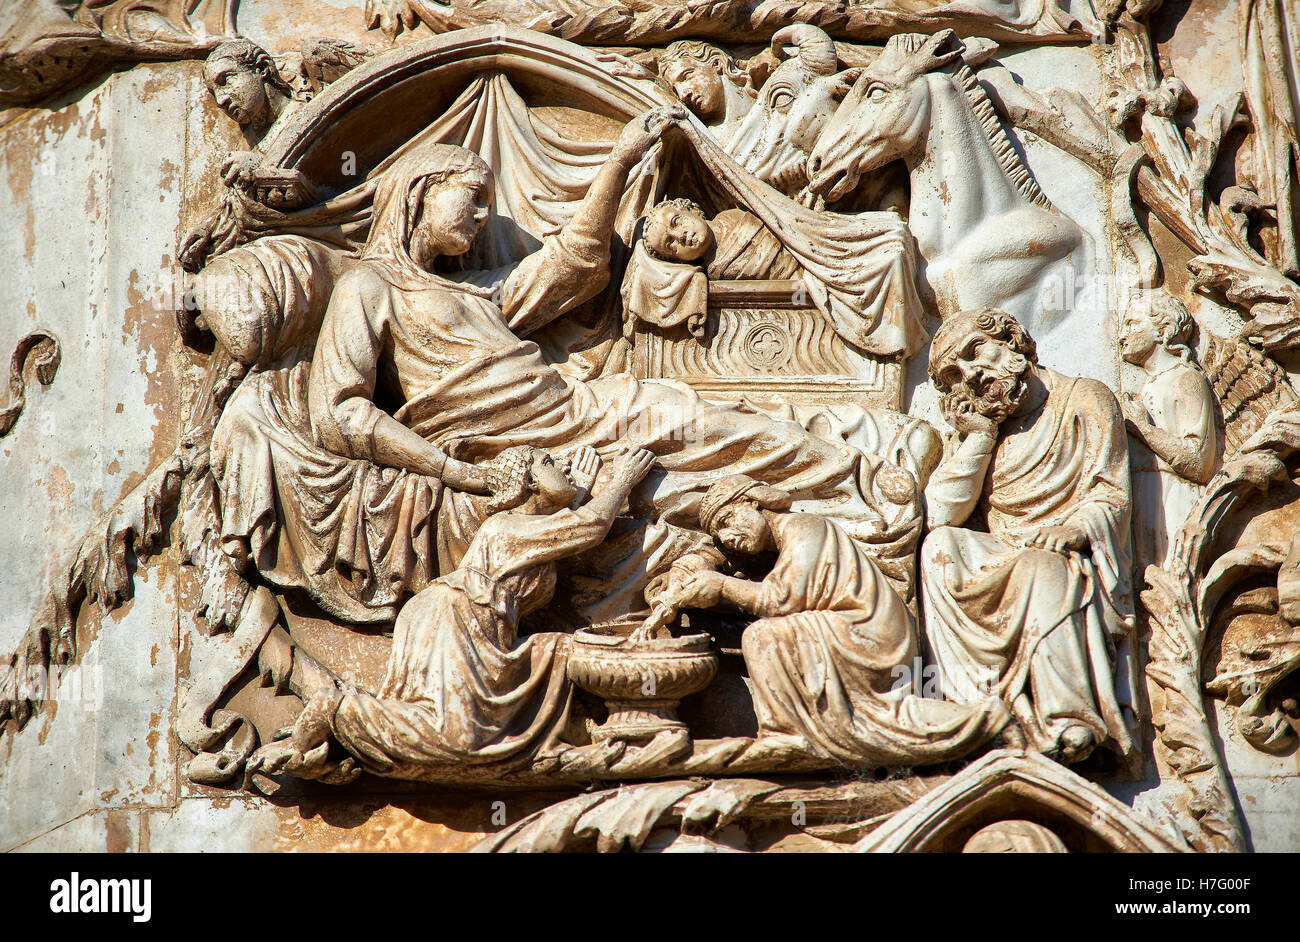 Sculpture bas-relief de la Nativité par Maitani, vers1310, façade gothique toscan, Cathédrale d'Orvieto, Ombrie, Italie Banque D'Images